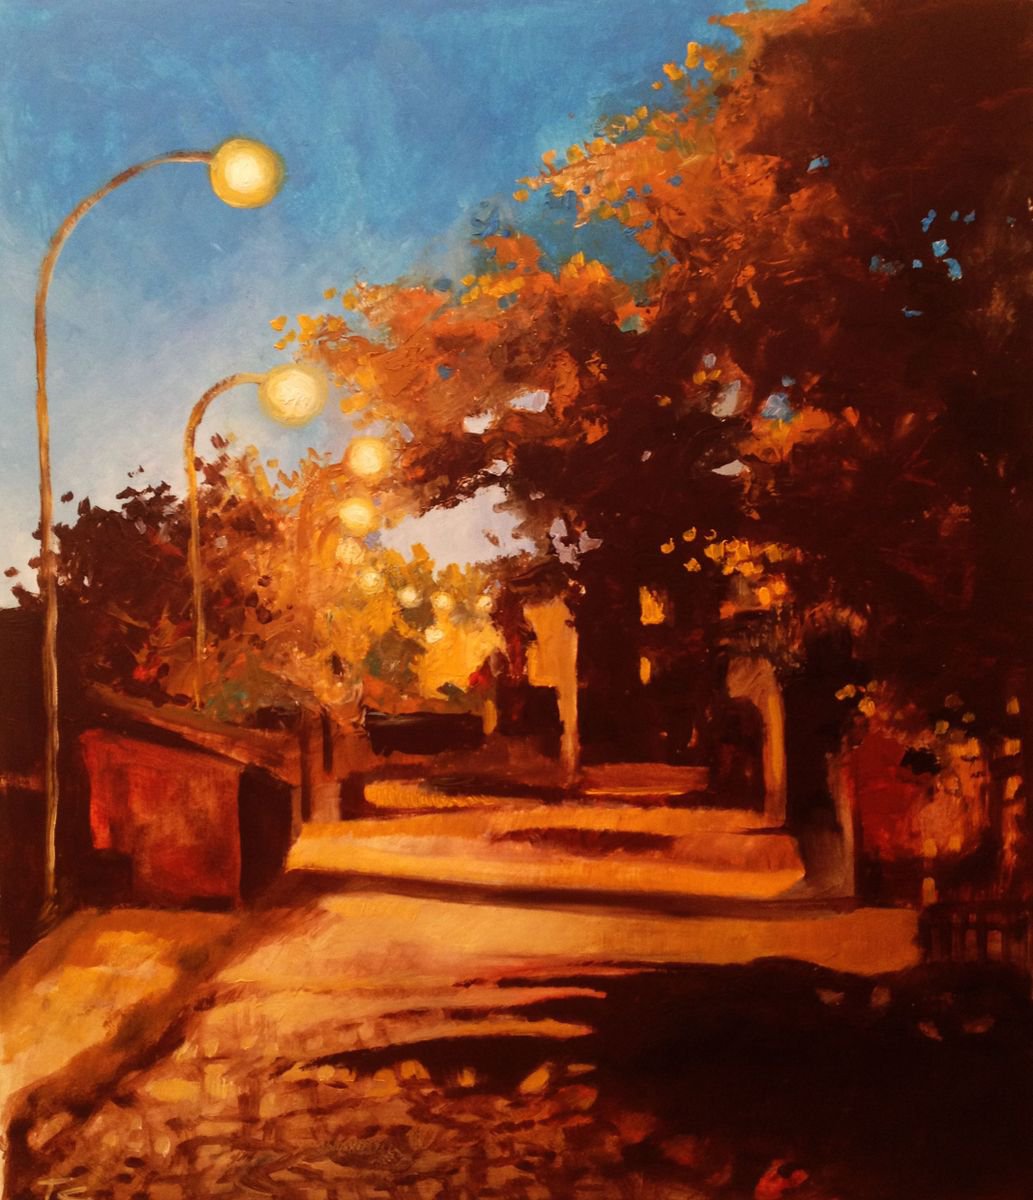 Almost night- Original oil painting- 38 x 42 cm (15 ' x 16,5')